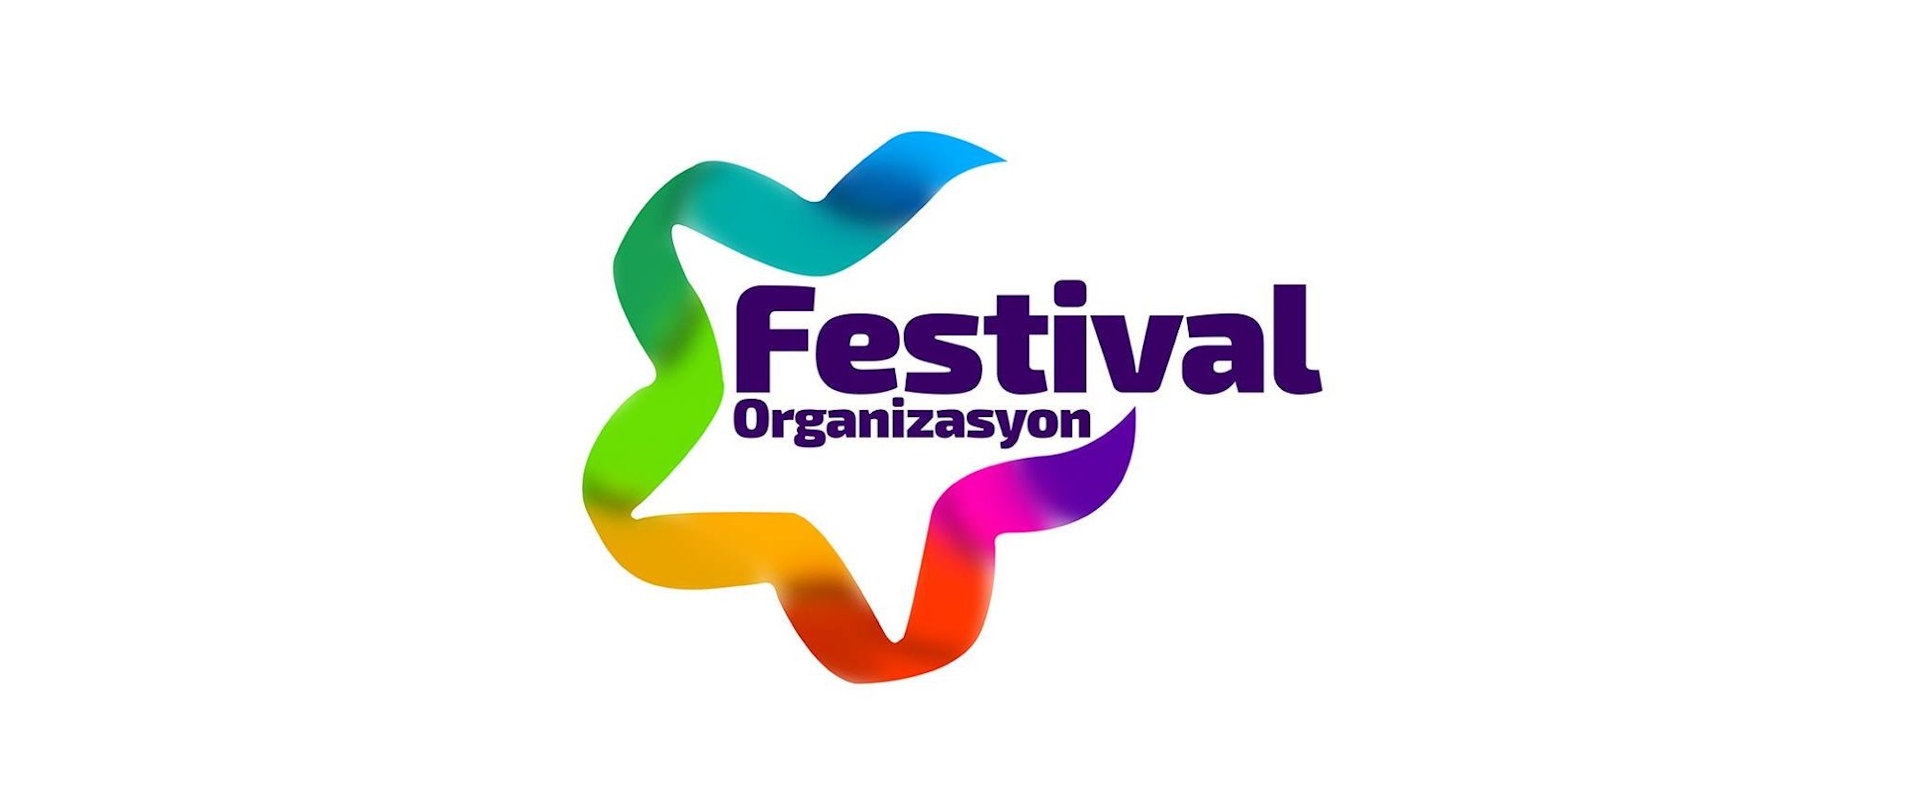 Festival Organizasyon - cover